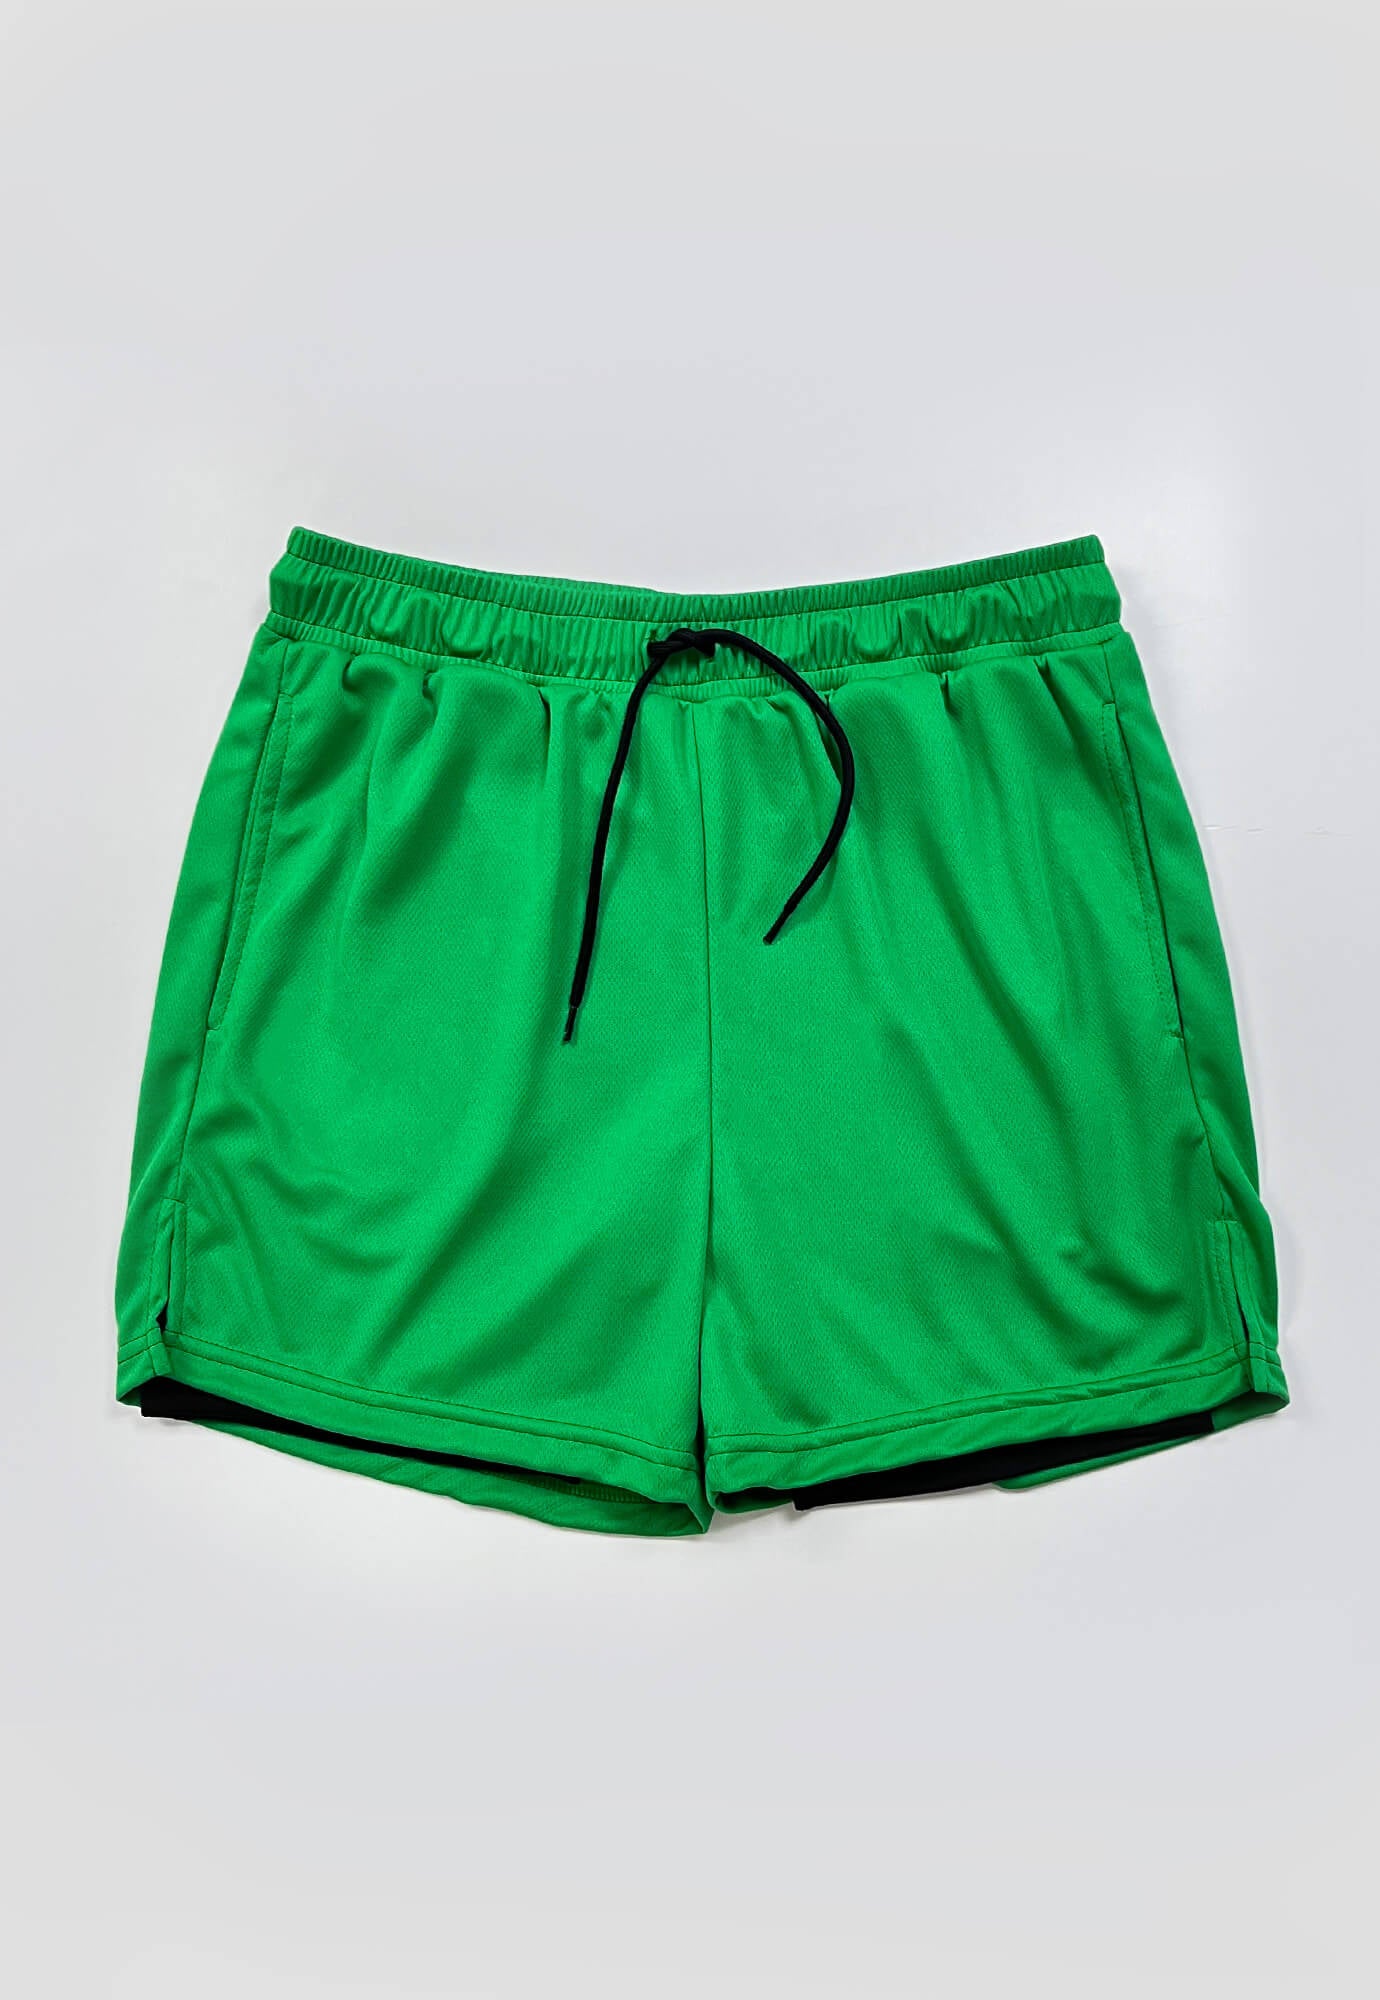 Short deportivo verde oscuro fondo entero, ciclista interno, cordón ajustable y bolsillos laterales para hombre